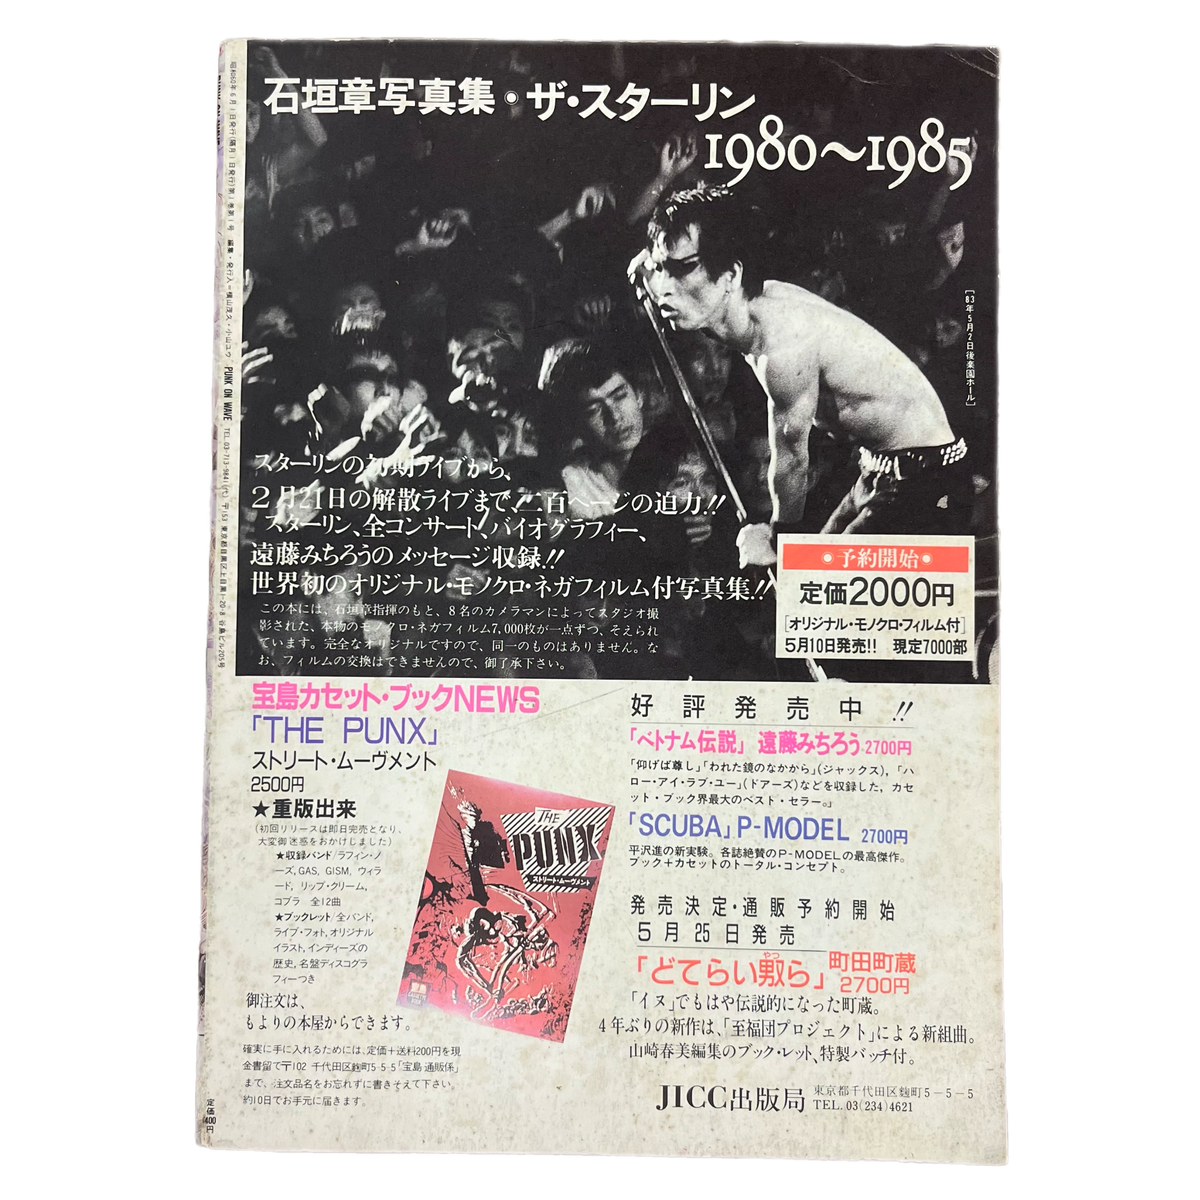 Vintage Punk On Wave &quot;Japan&quot; Issue #1